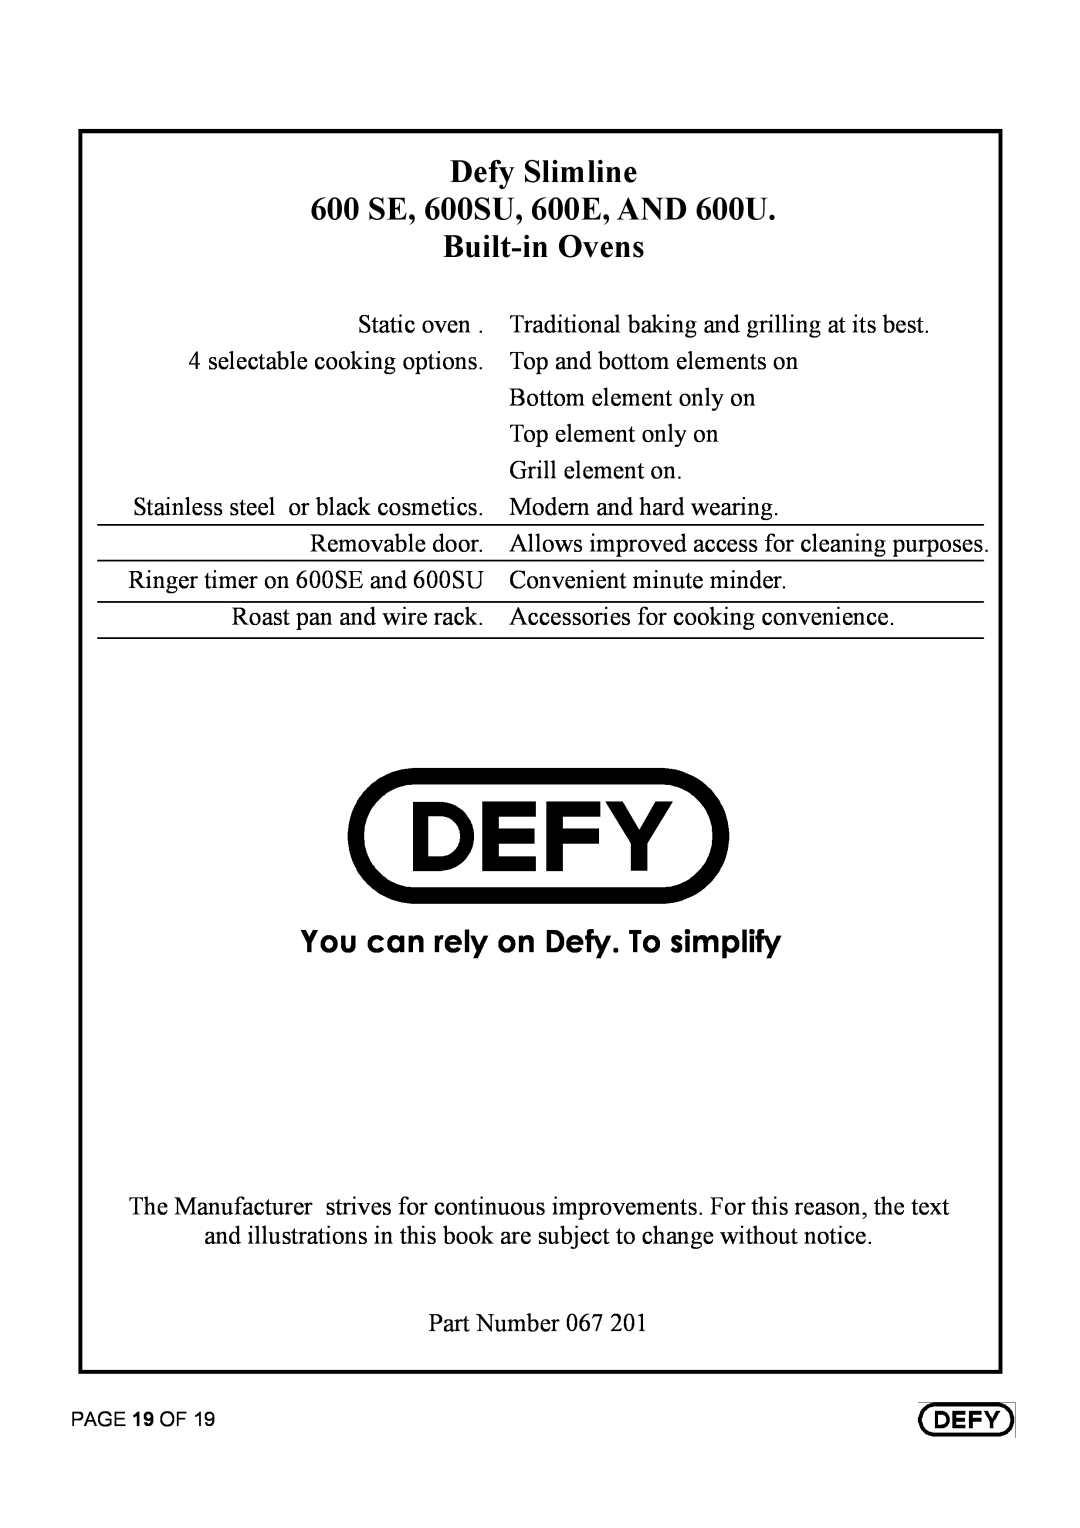 Defy Appliances 600 U - DBO 451, 600 SE - DBO 452, 600 E - DBO 450, 600 SU - DBO 453 1 =##-!=##-!=##!1=## %, 5 # #4 4 = % # 